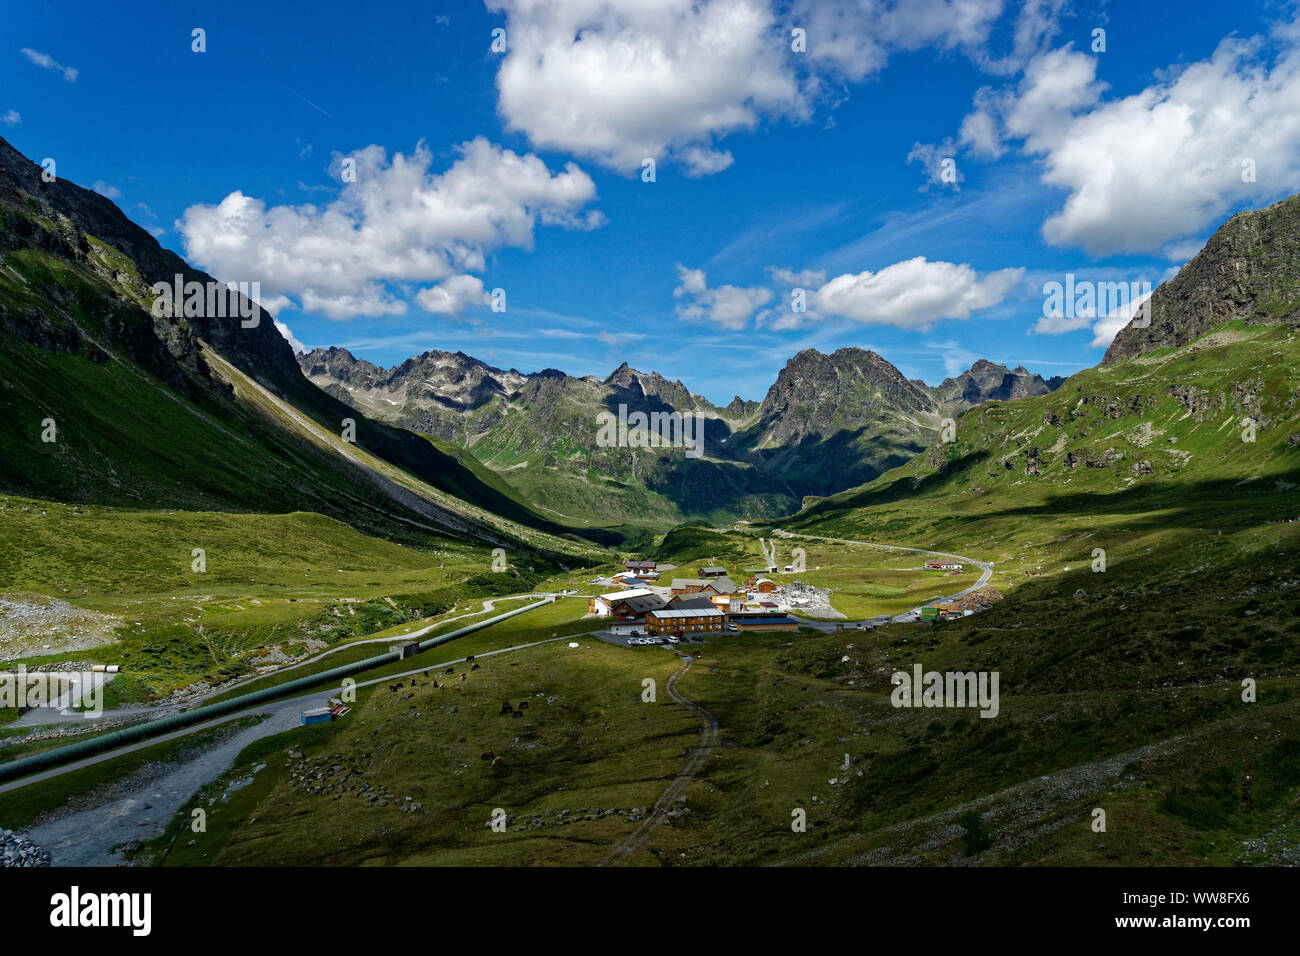 Groupe Silvretta dans les Alpes centrales entre la Suisse et l'Autriche à partir de l'Autriche Banque D'Images